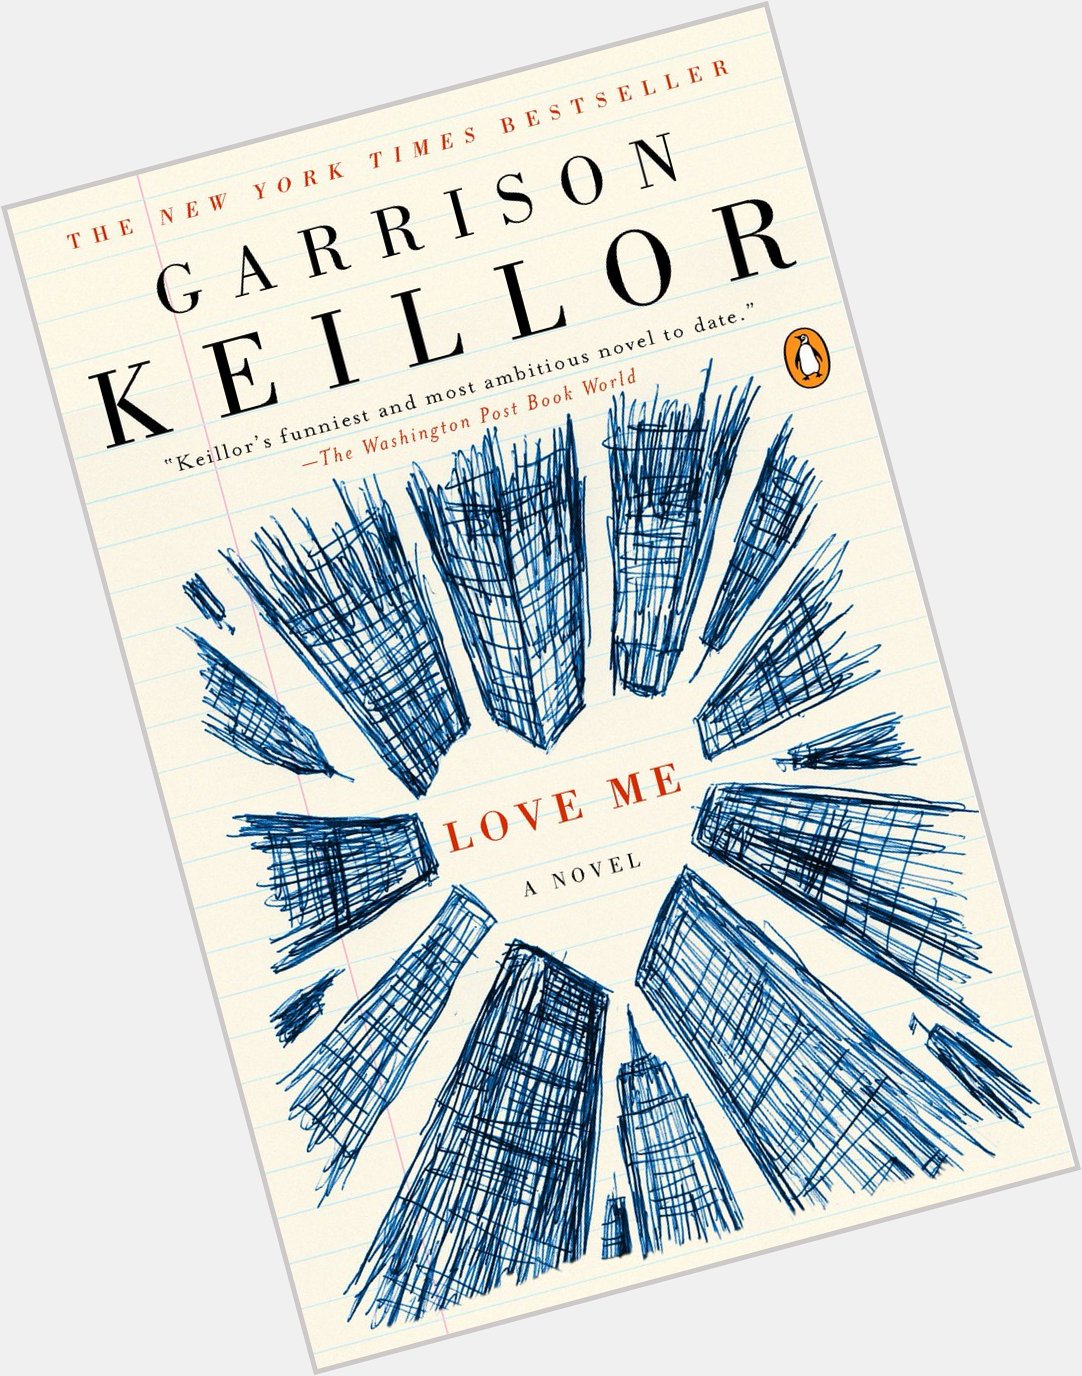  Happy birthday to beloved American storyteller Garrison Keillor!  